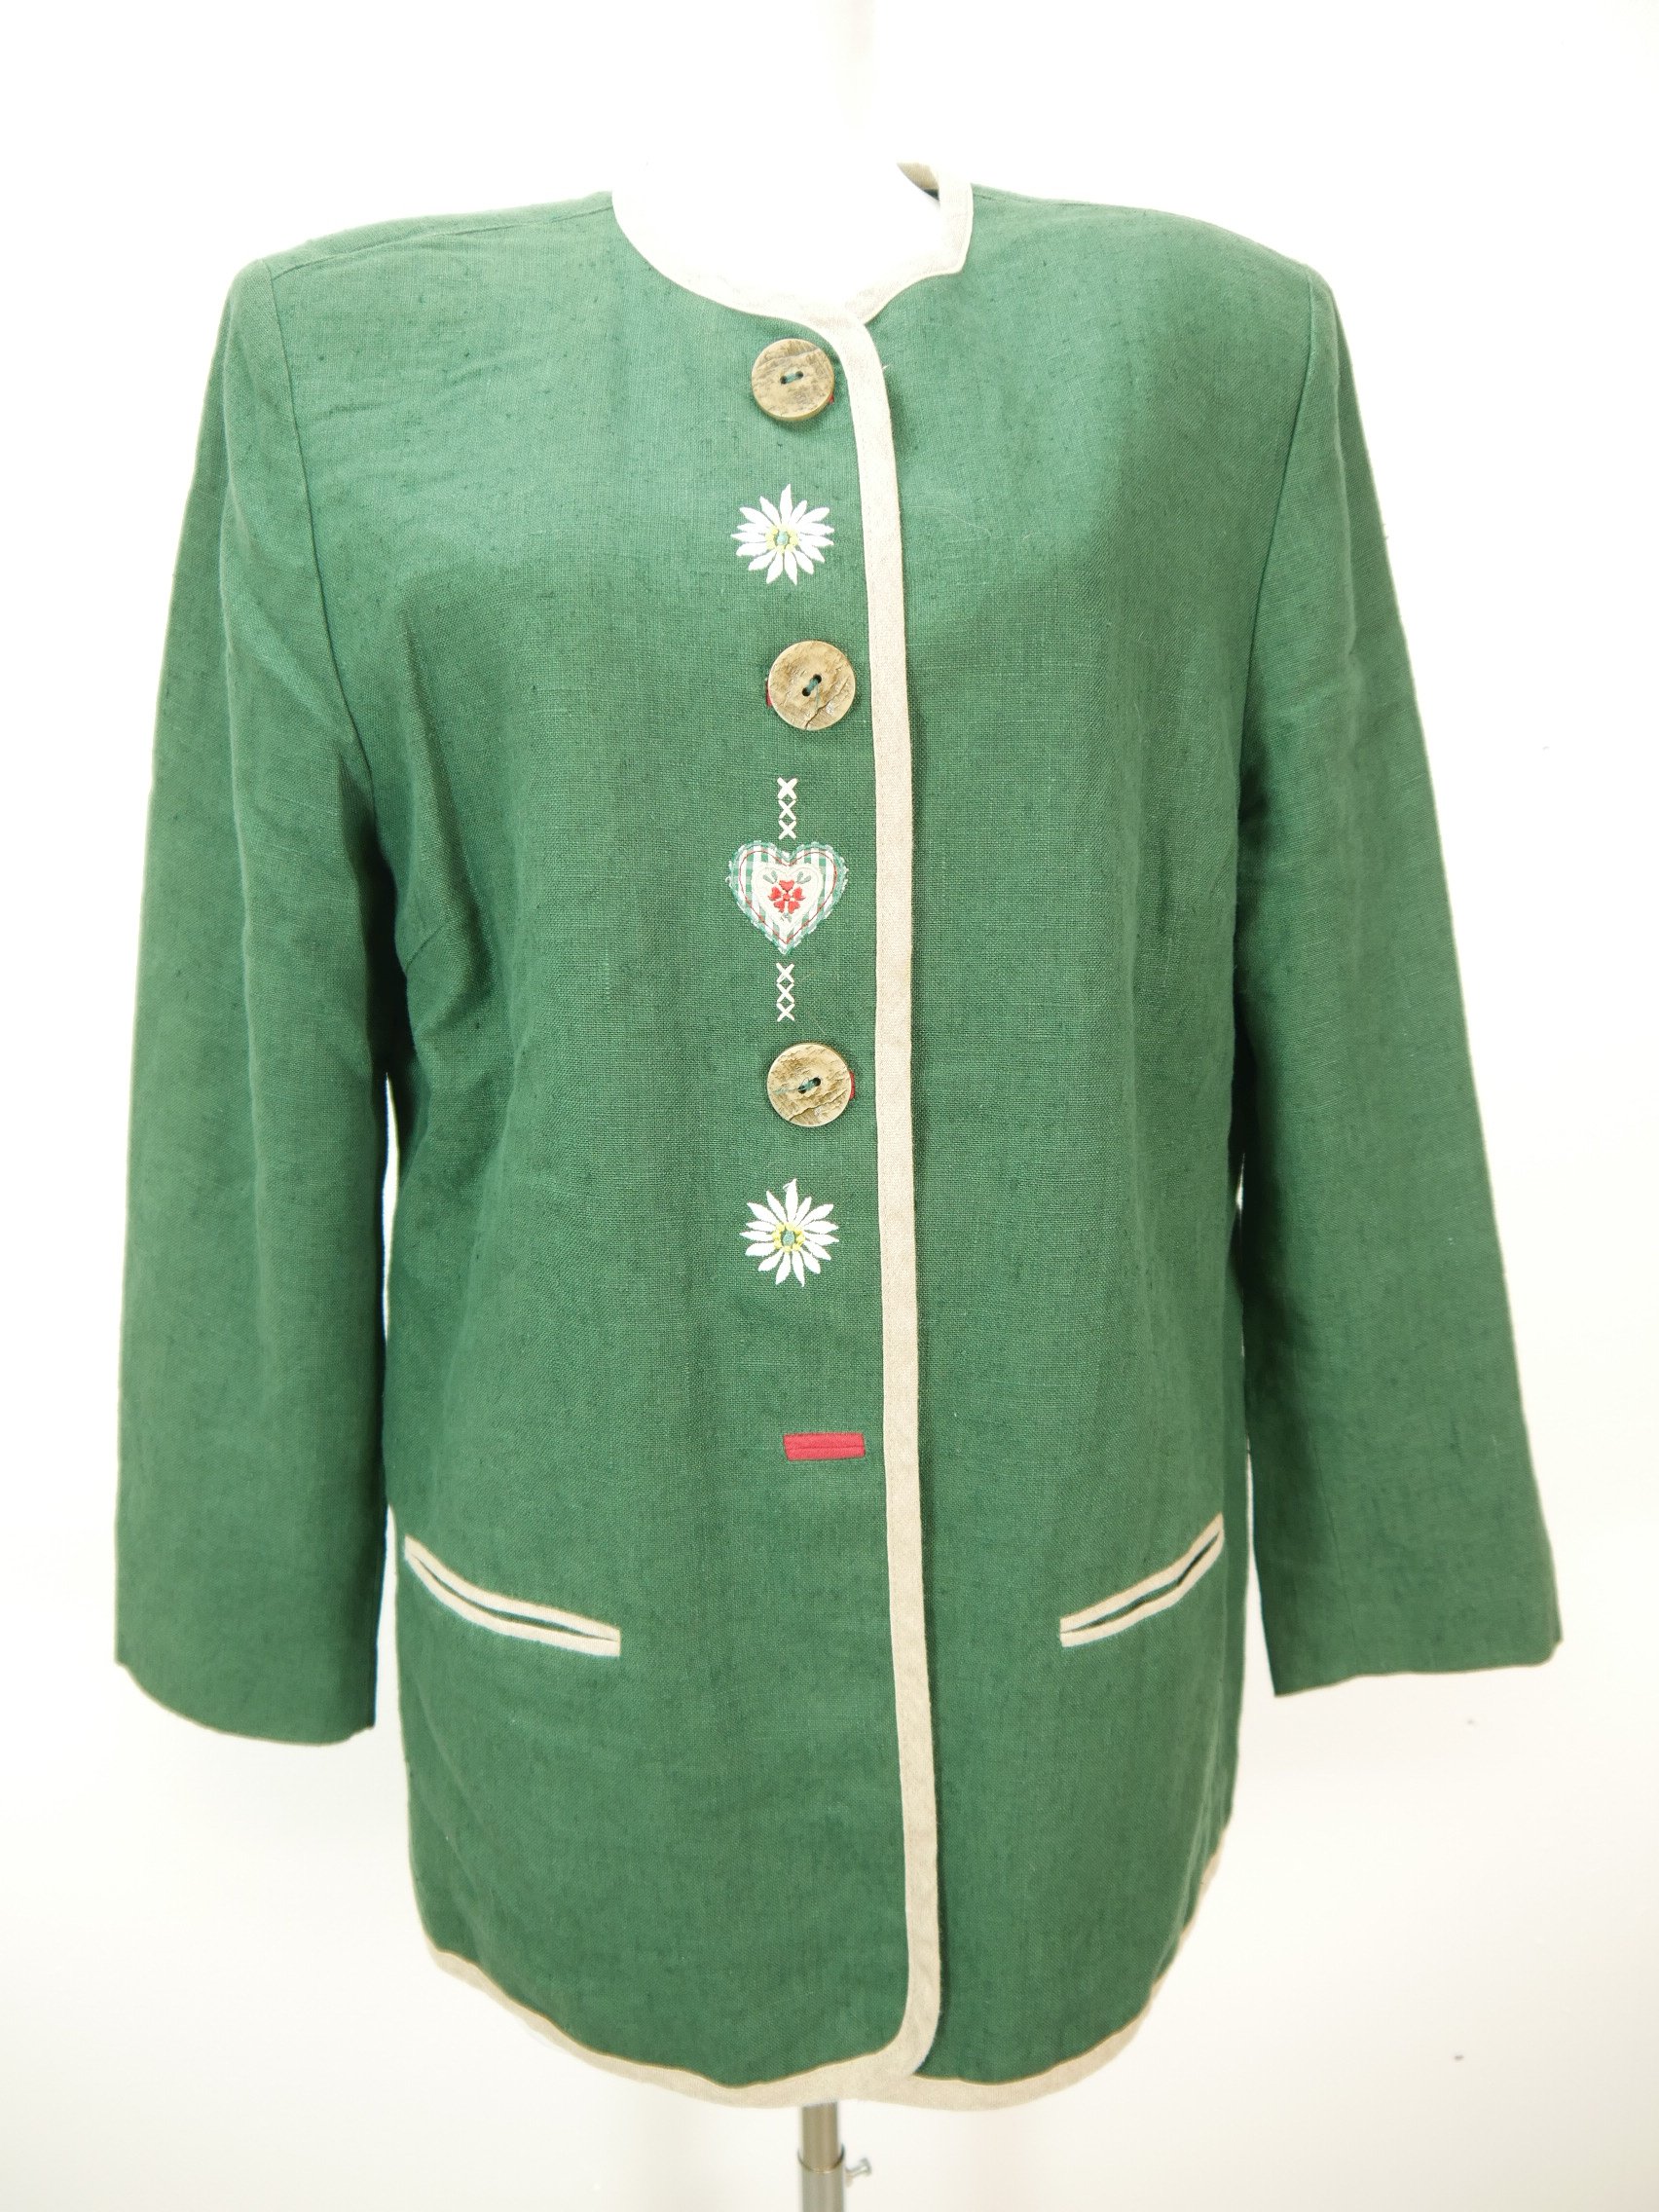 Klasse grün Janker mit Edelweißstickerei herrliche Trachtenjacke Jacke Gr.46